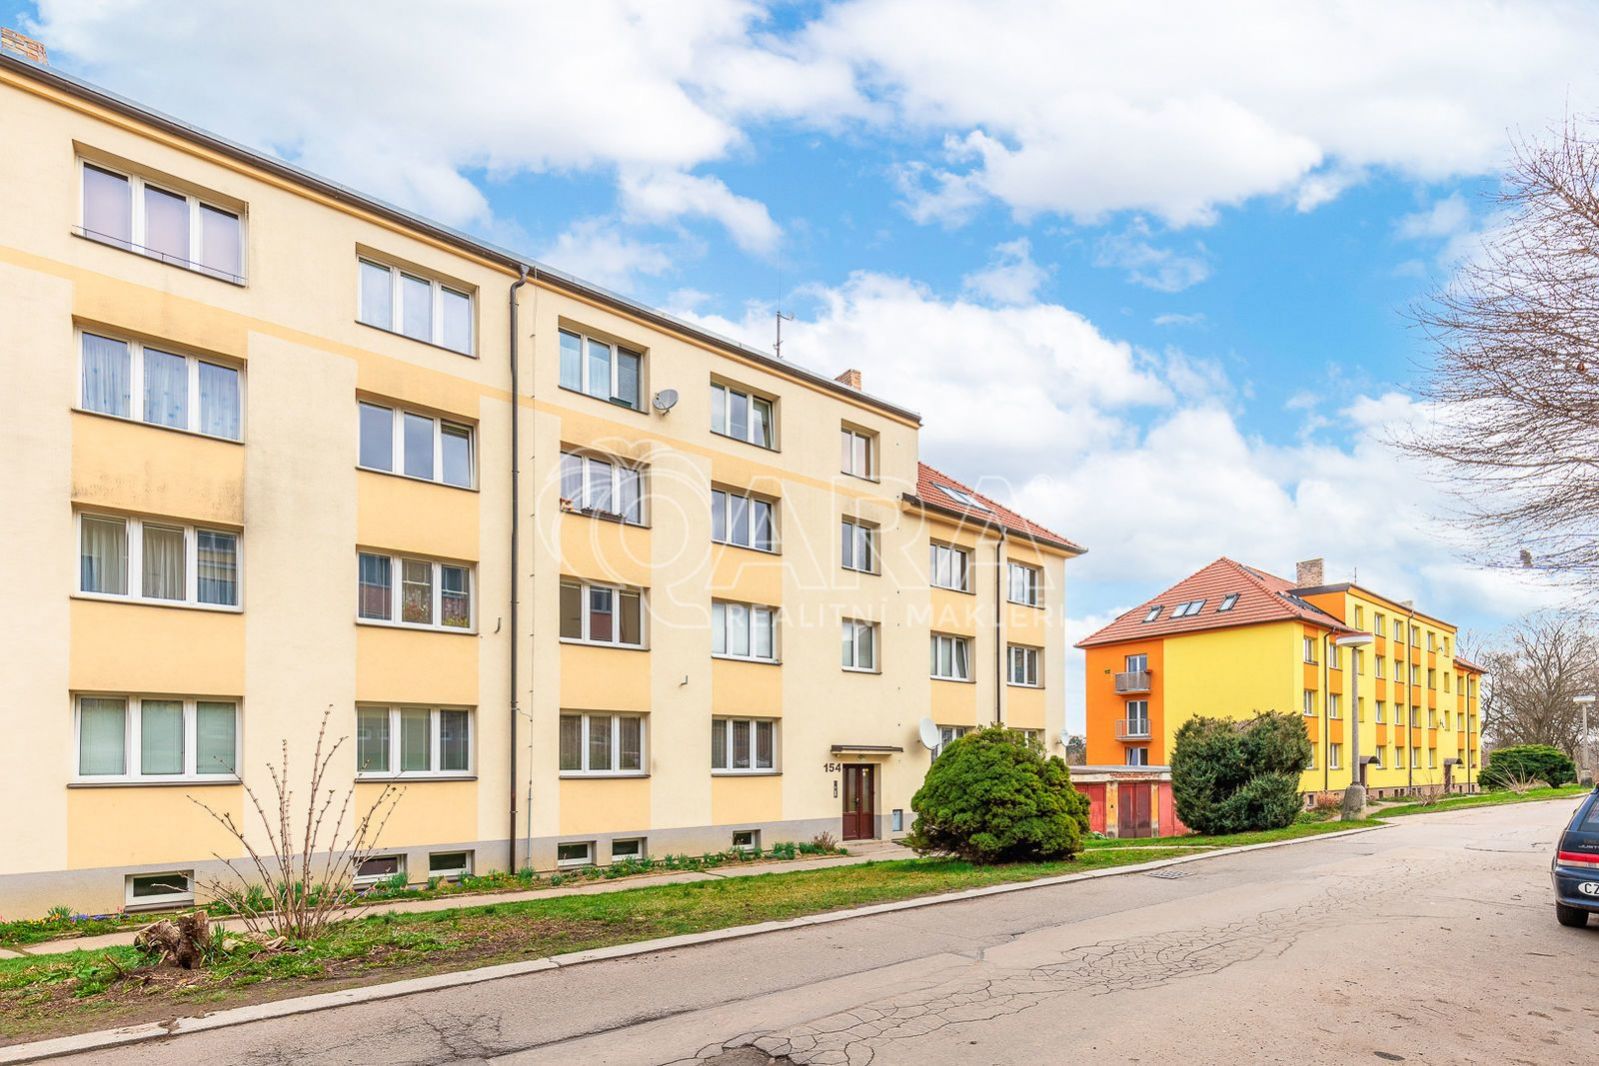 NA PRODEJ - světlý byt o dispozici 2+1, 54 m2, na ideální adrese - Vyšehrad, Český Krumlov, obrázek č. 1